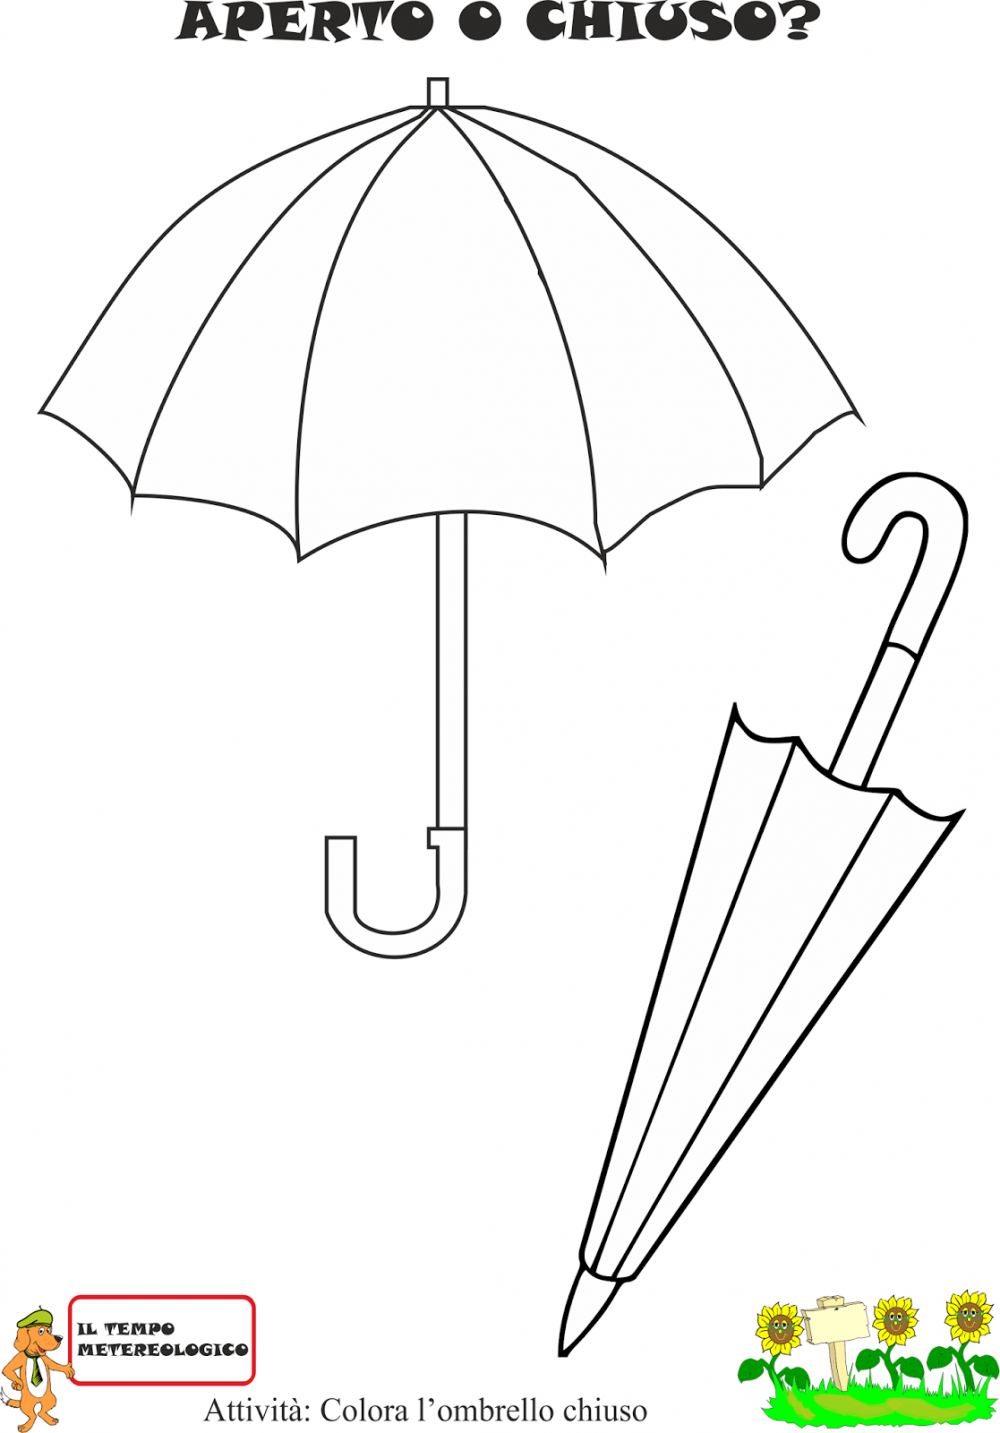 Зонт раскраска для детей